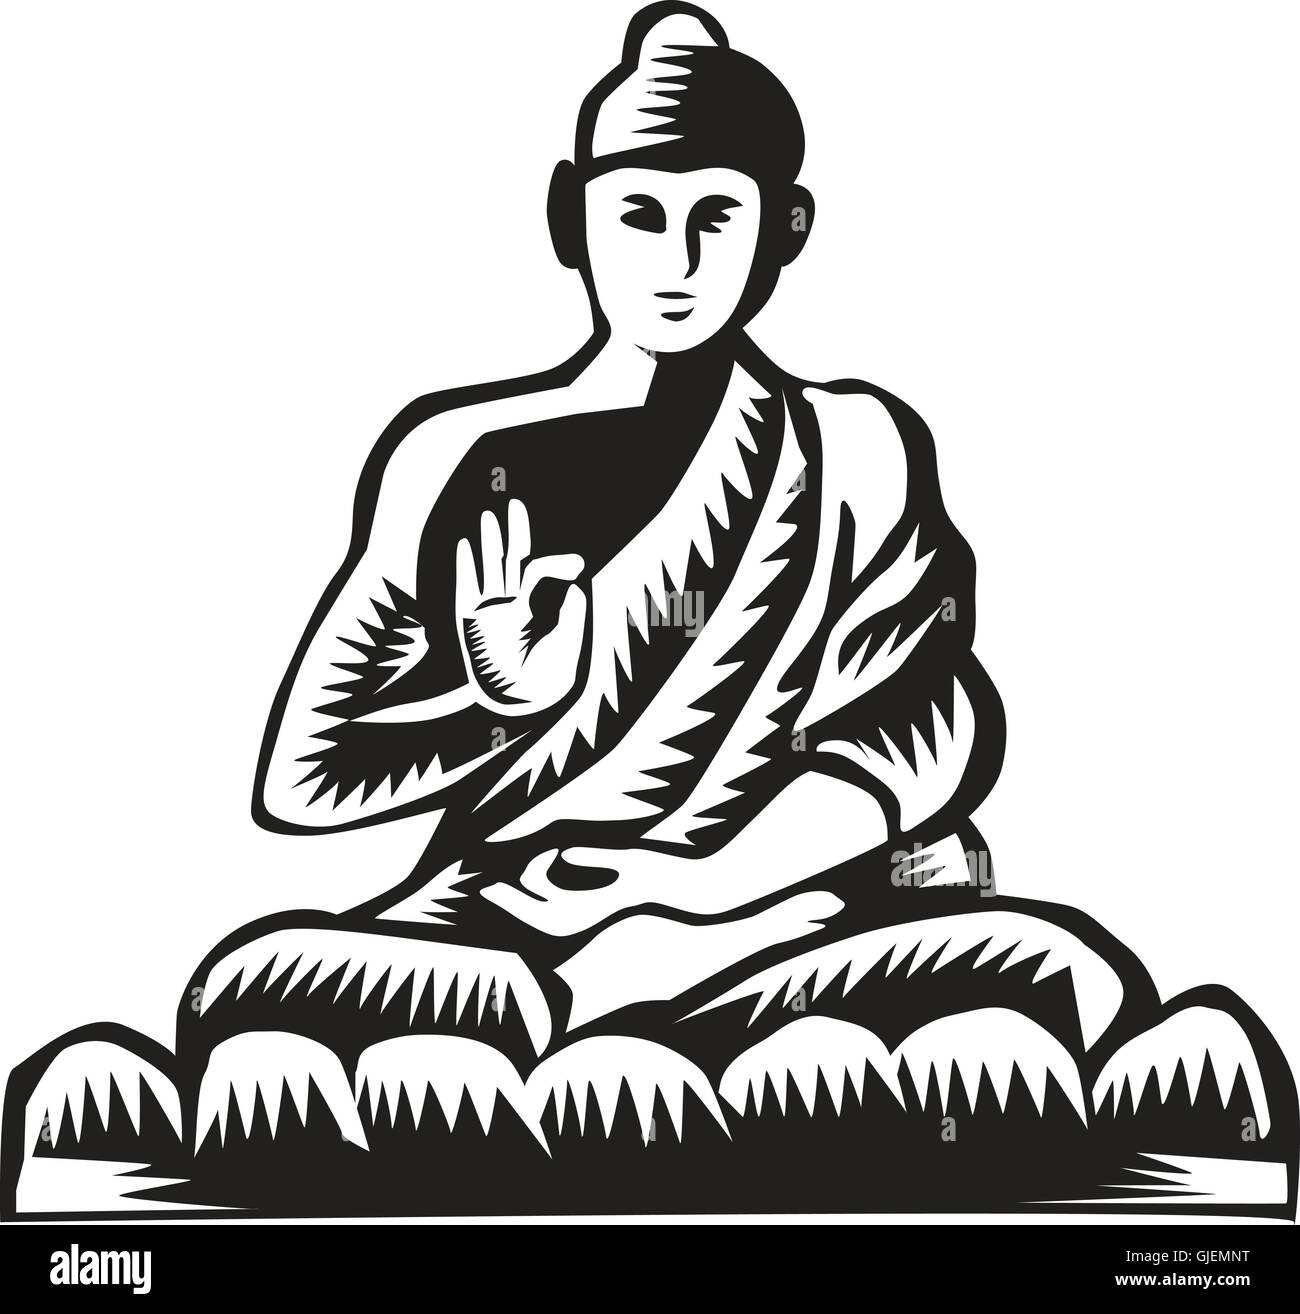 Illustration des Gautama Buddha, Siddhārtha Gautama, Shakyamuni Buddha im Lotussitz angesehen vom vorderen Satz auf isolierten weißen Hintergrund in Retro-Holzschnitt Stil getan. Stock Vektor